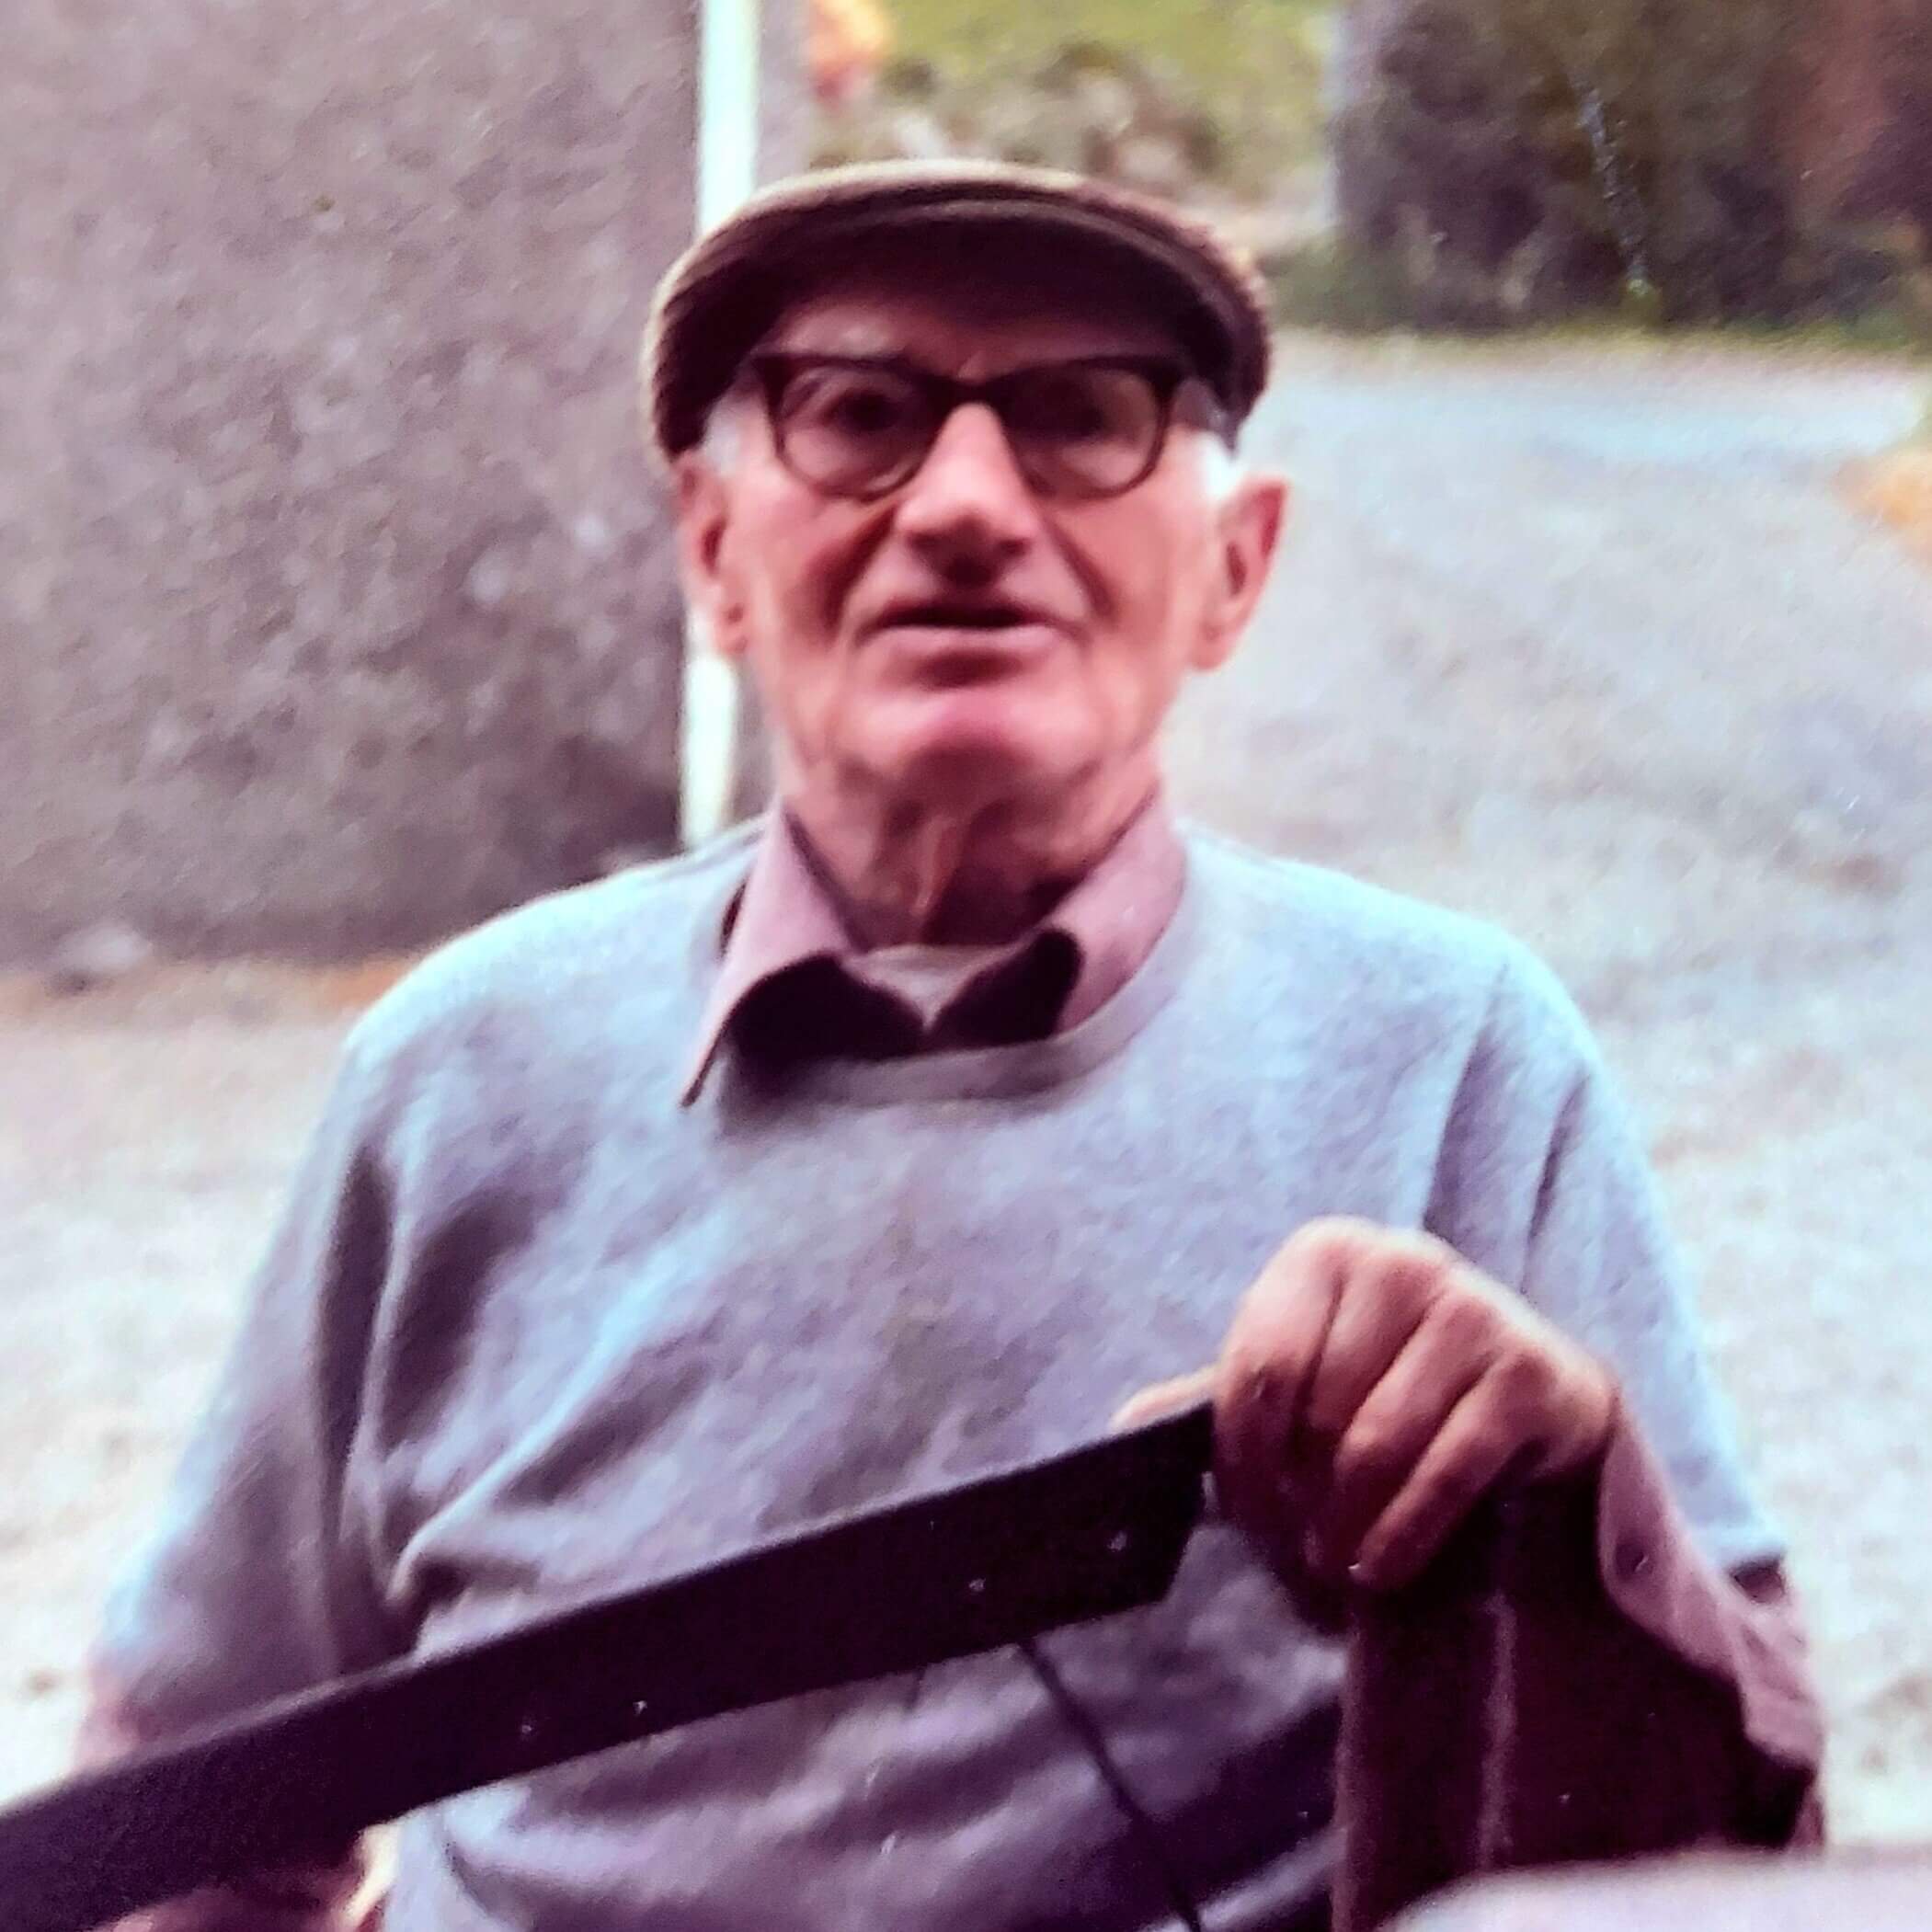 Joe McCaughan from The Hollow, Glenshesk, holding a scythe, 1970's